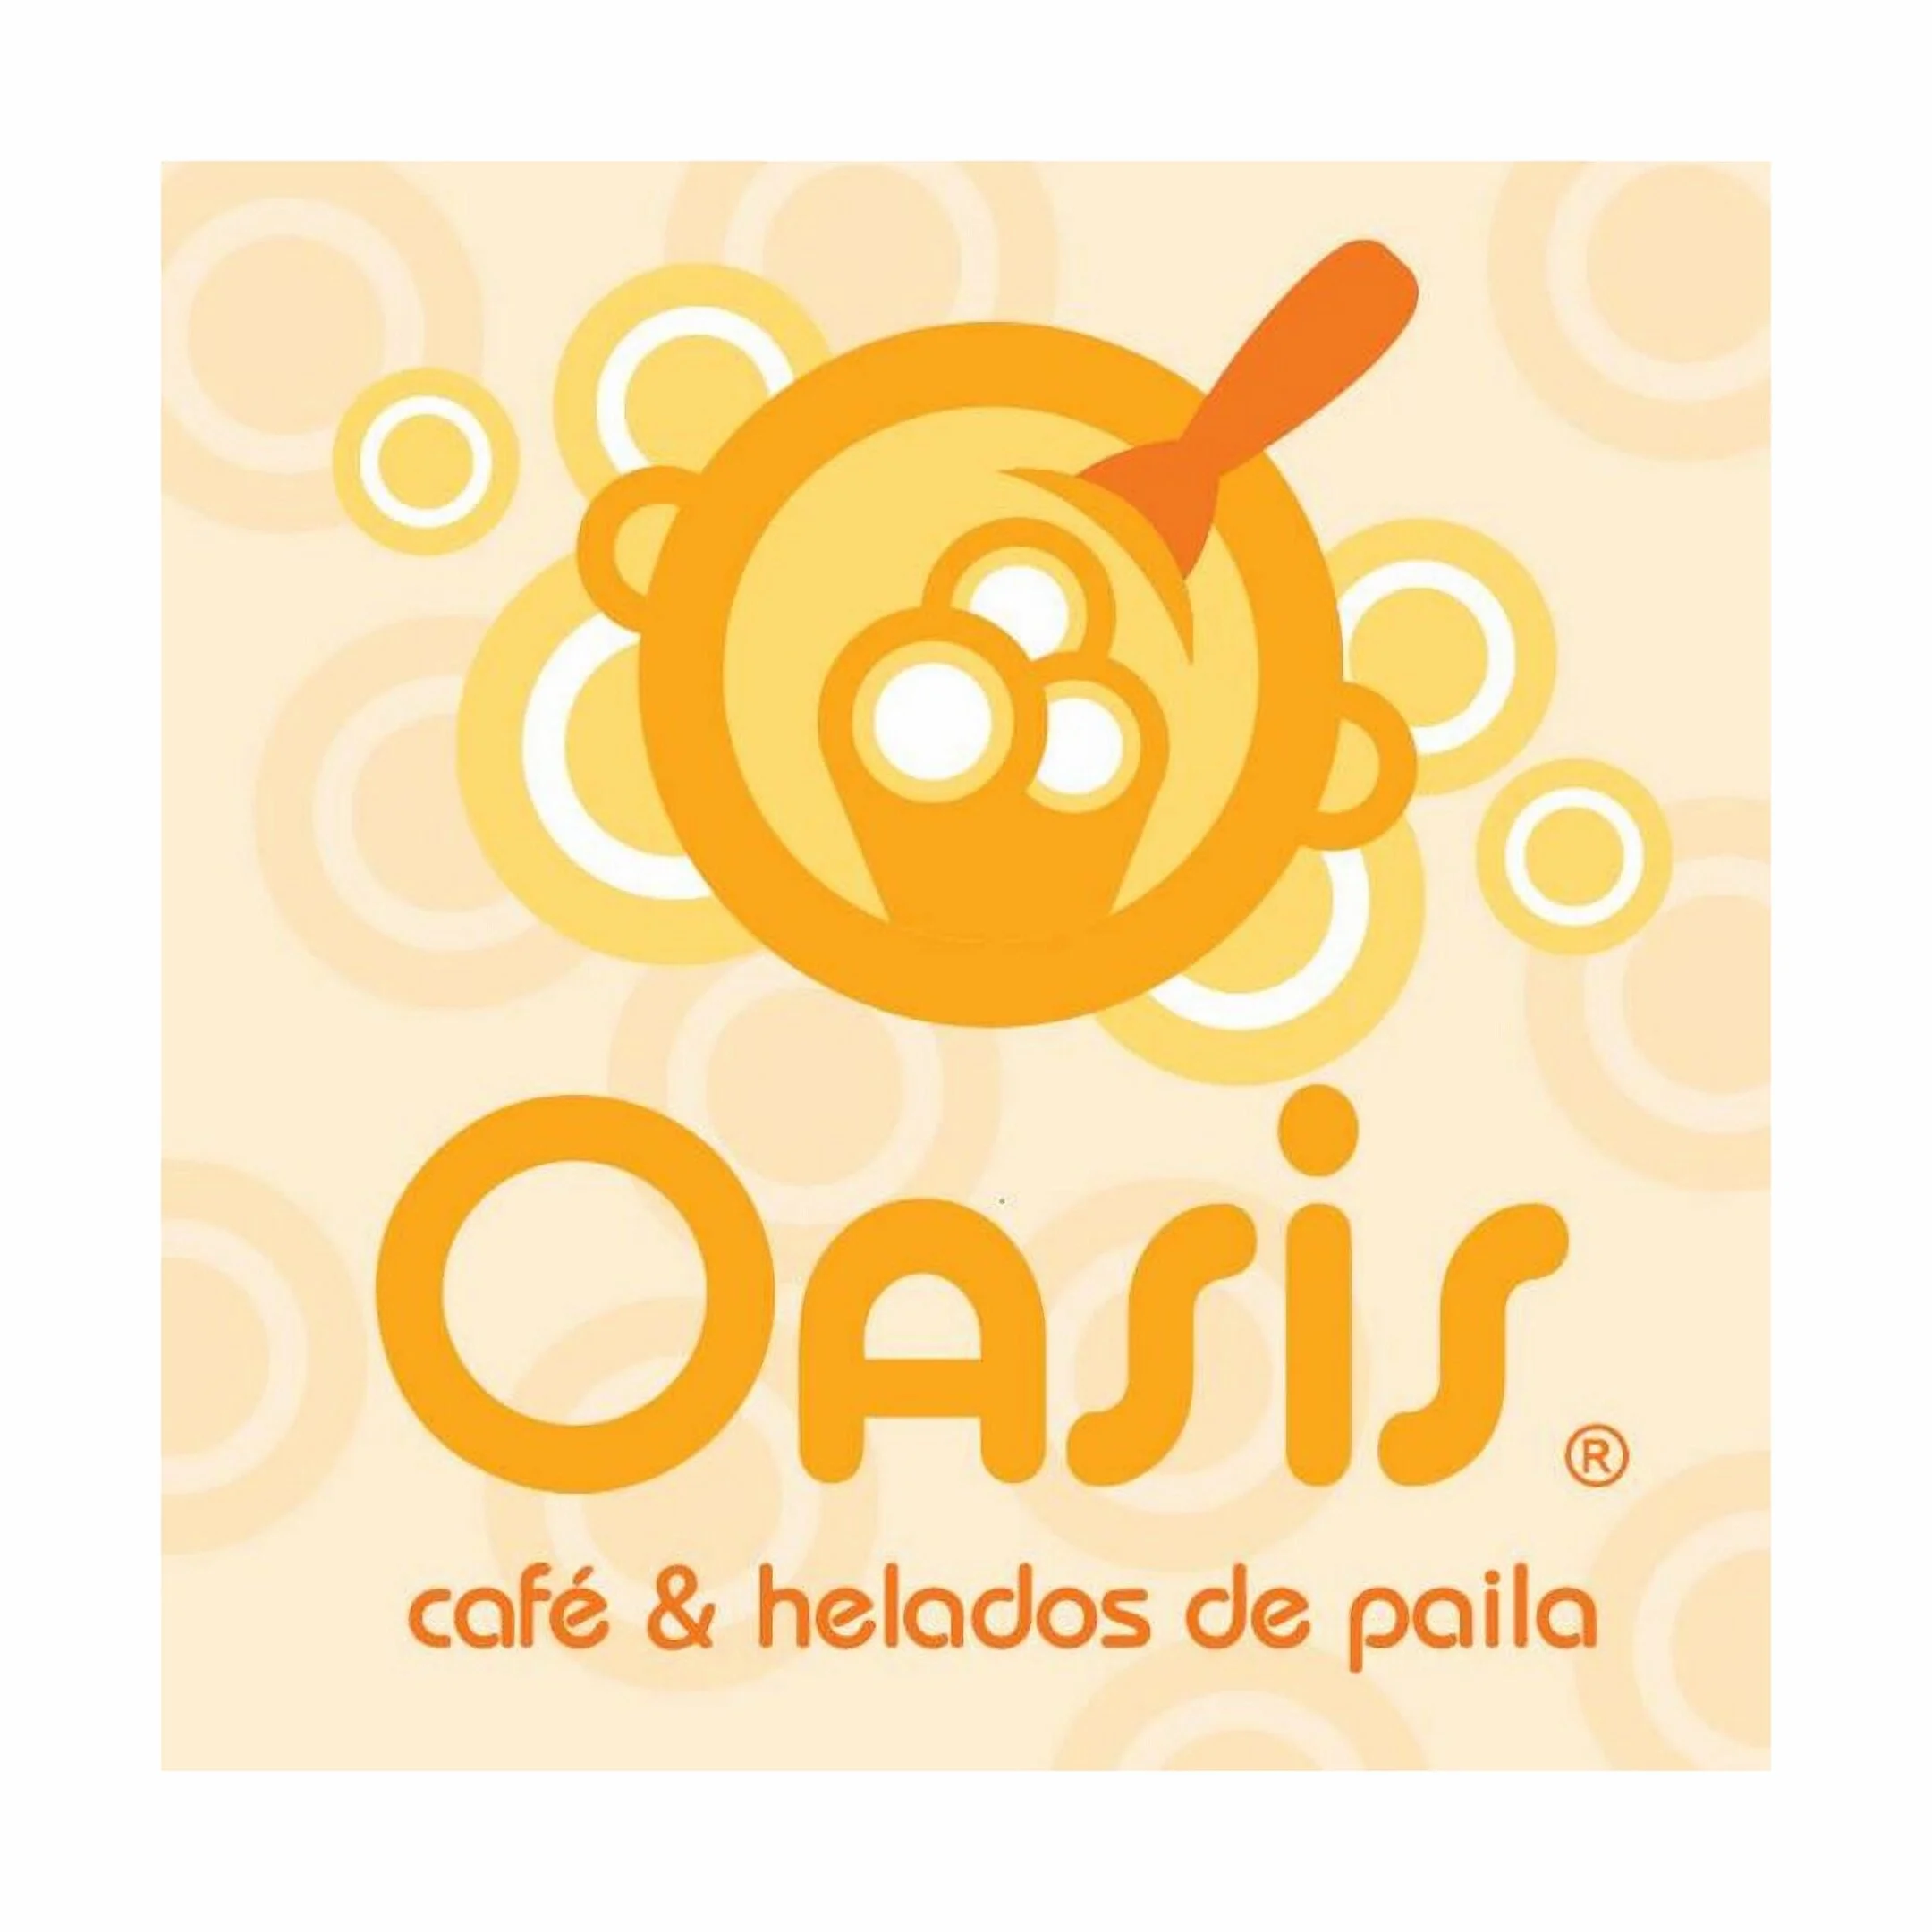 Restaurantes-oasis-cafe-helados-de-paila-18255